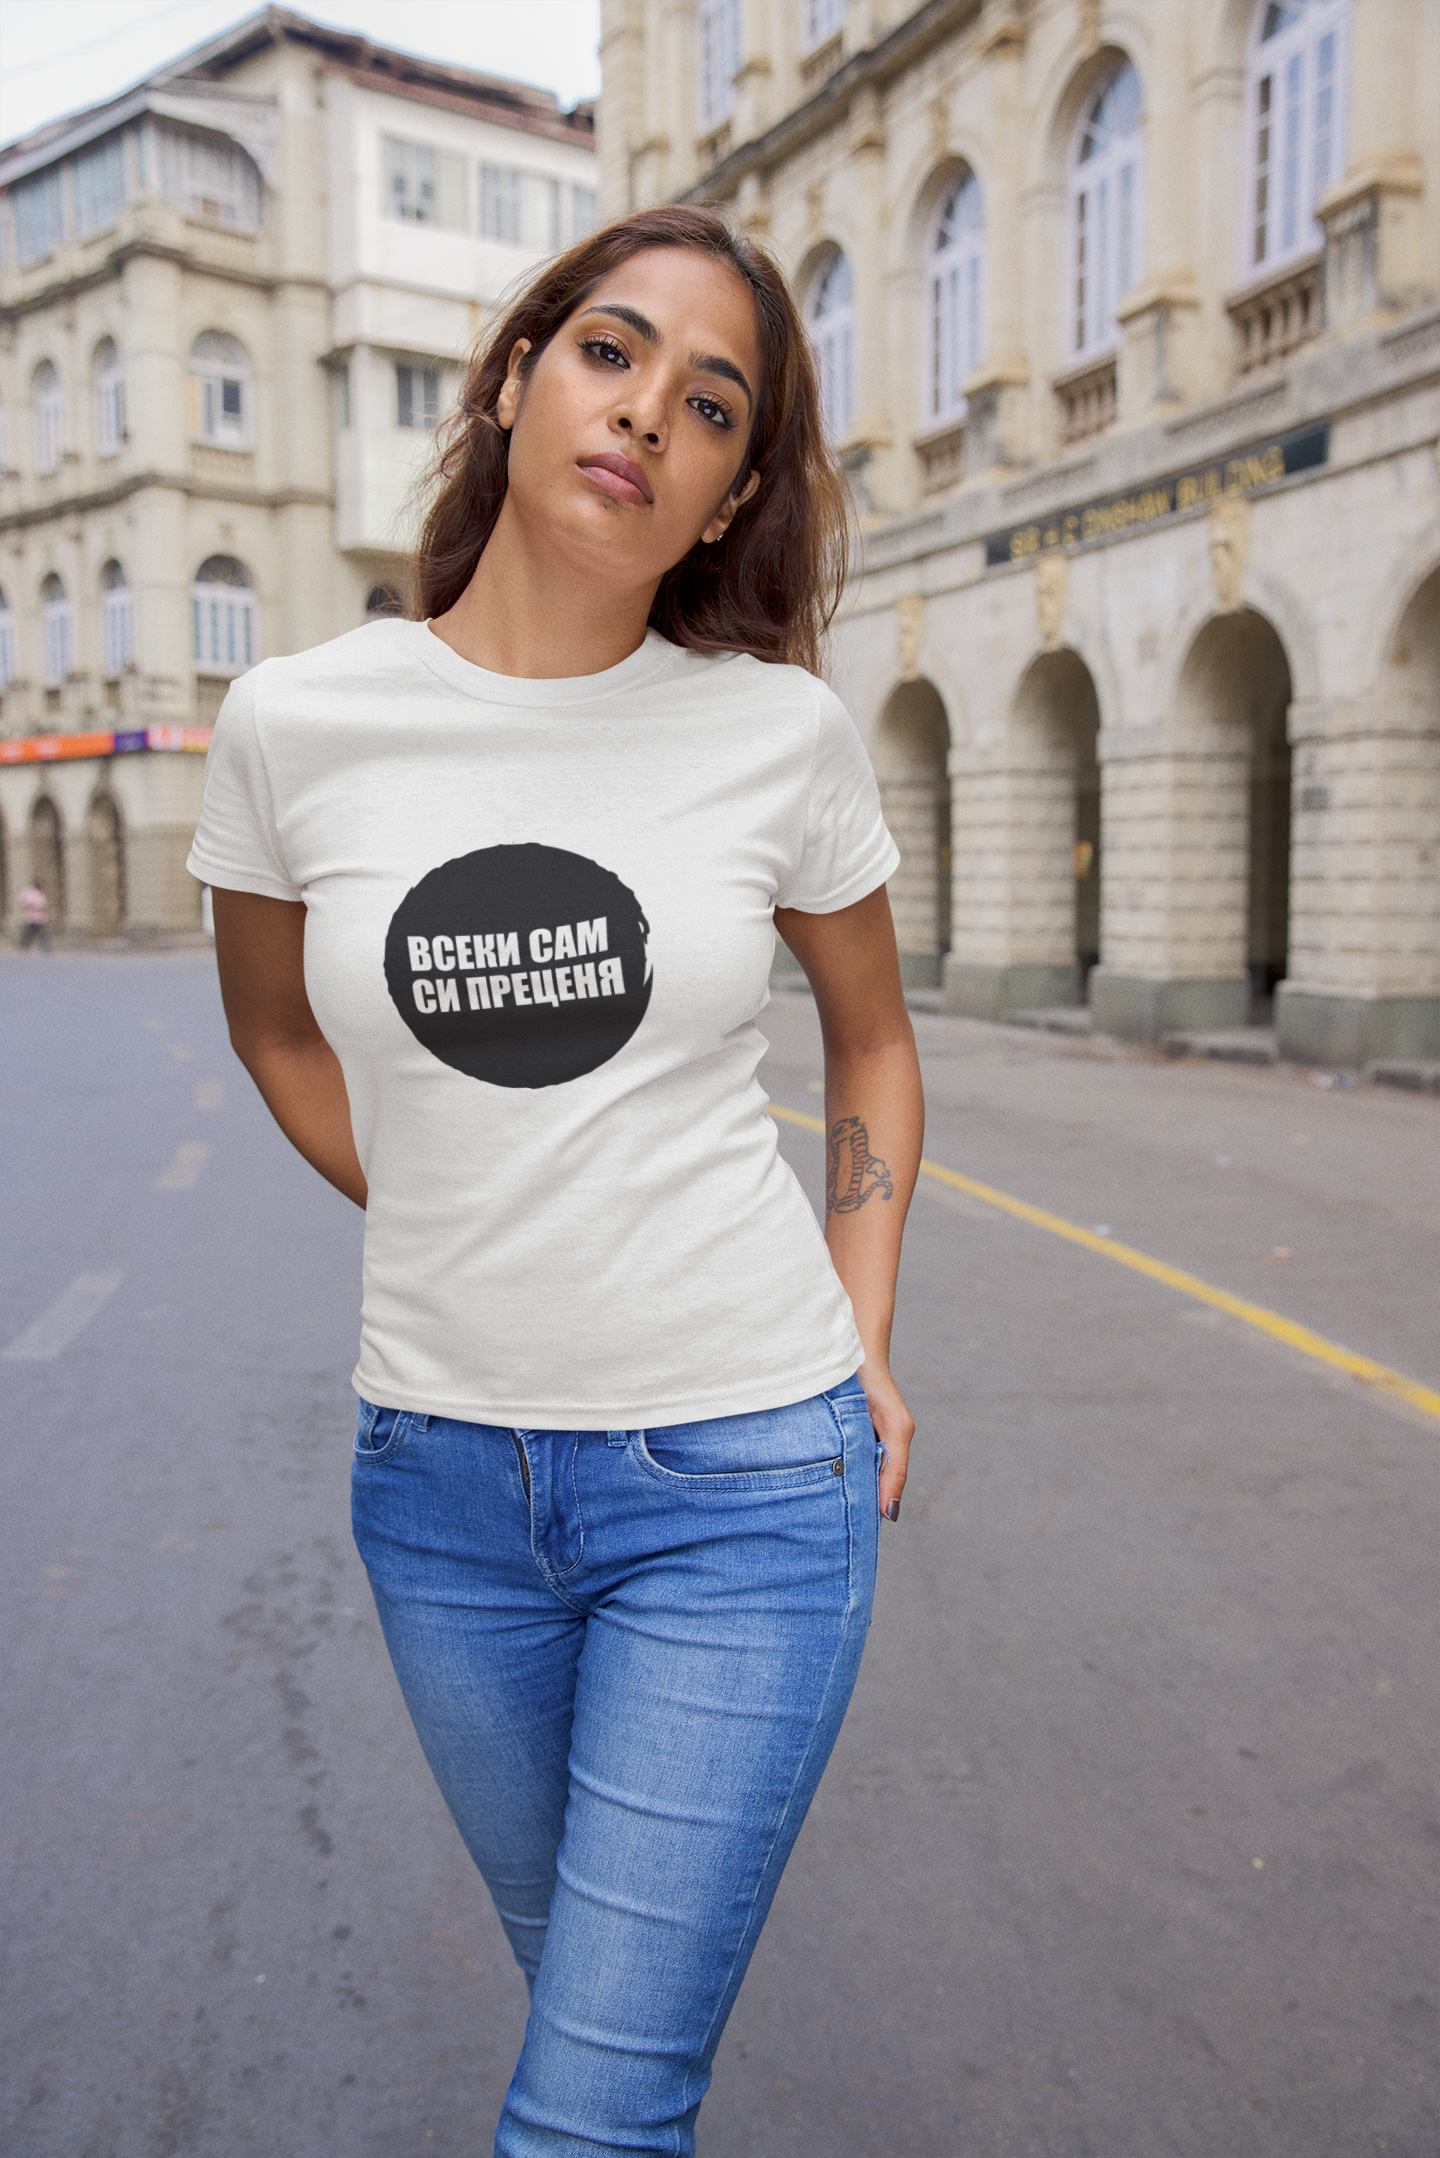 Дамска тениска “Всеки сам си преценя”